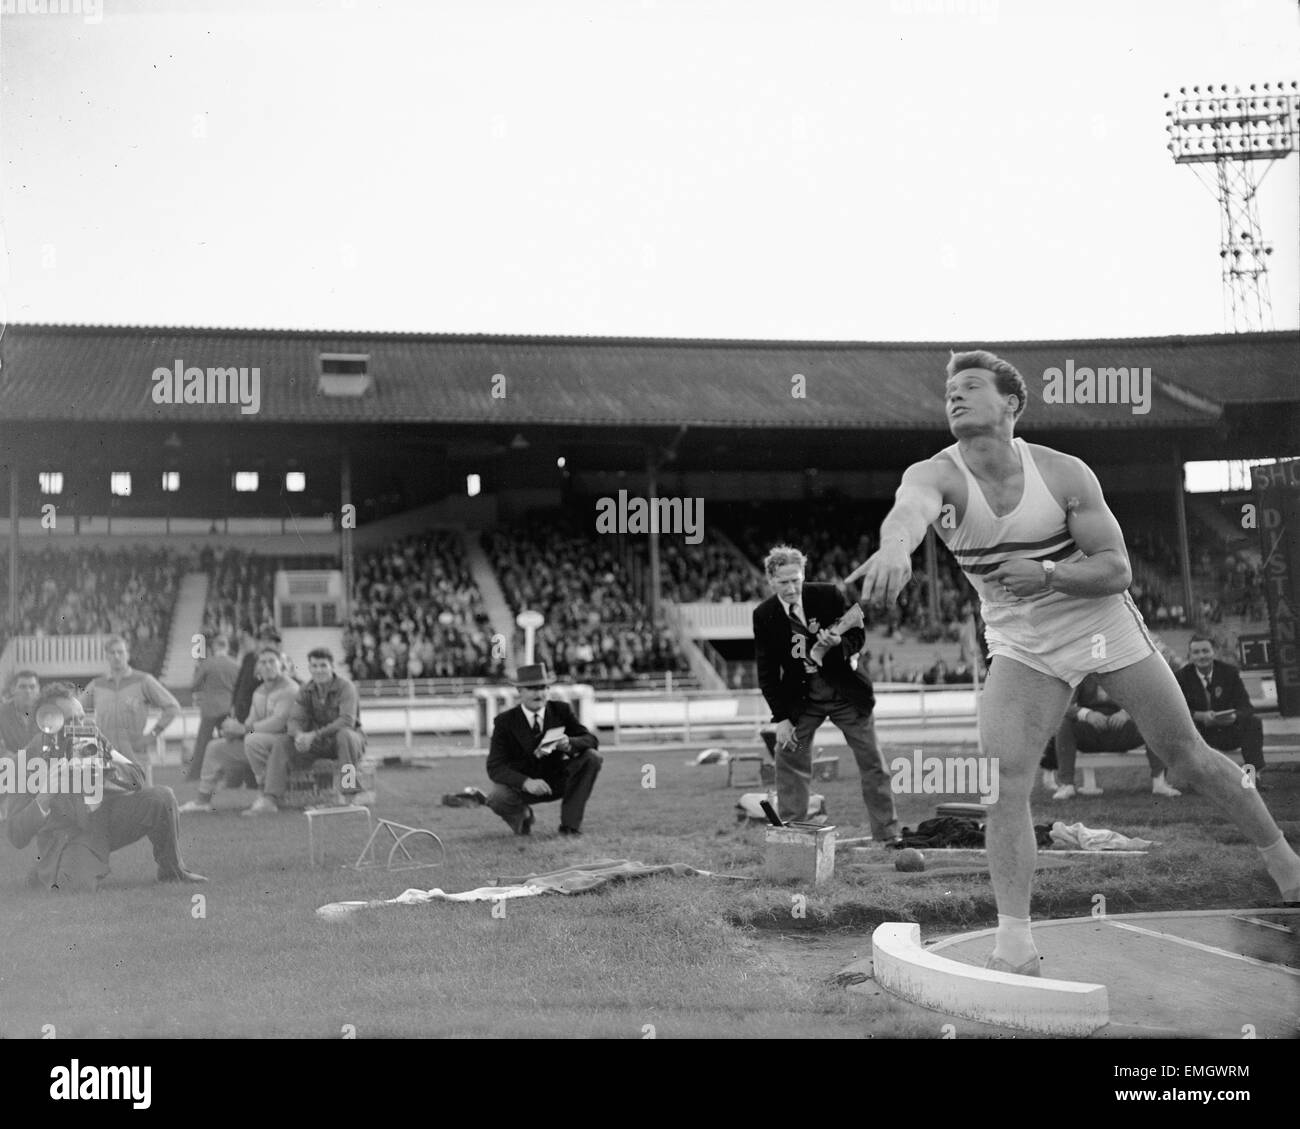 Britischen Leichtathletik Spiele im White City. 21-jährige Arthur Rowe in Aktion während der Kugelstoßen Veranstaltung. 17. August 1959. Stockfoto